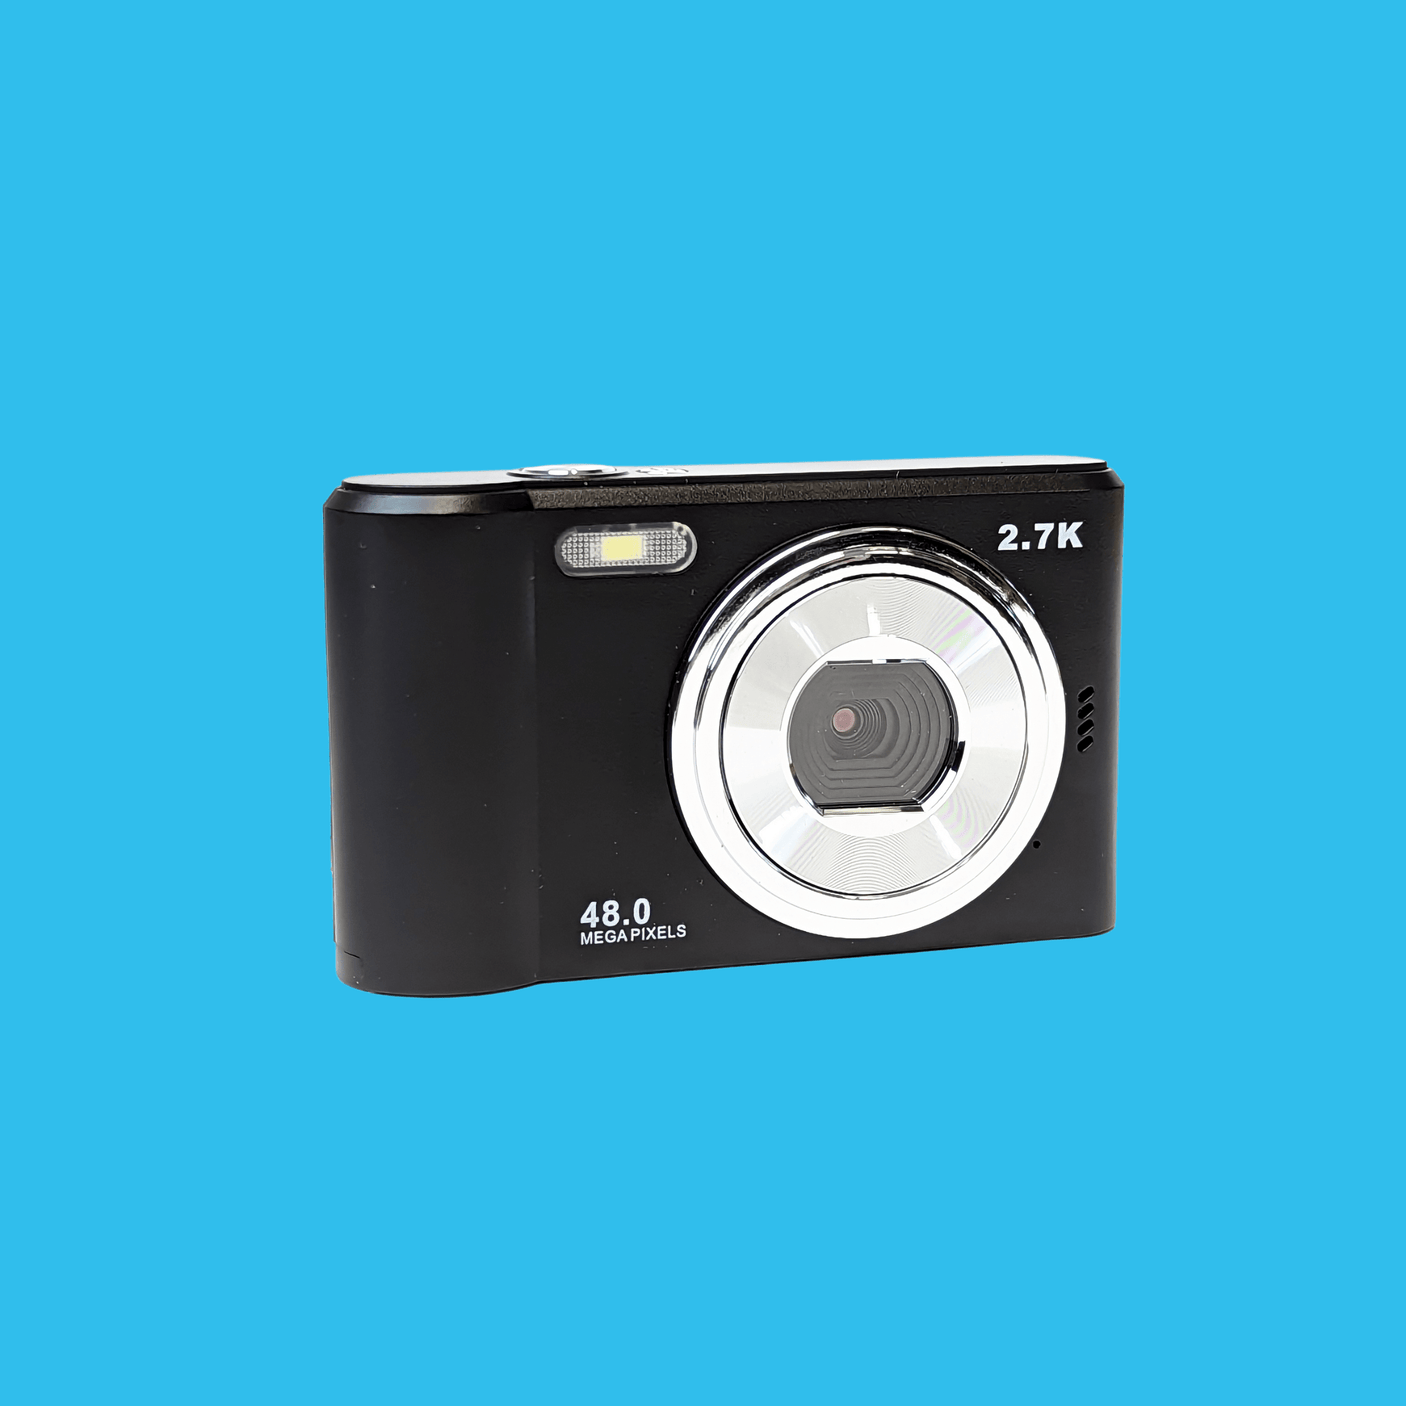 Retro Black Compact Digital Camera - Digicam